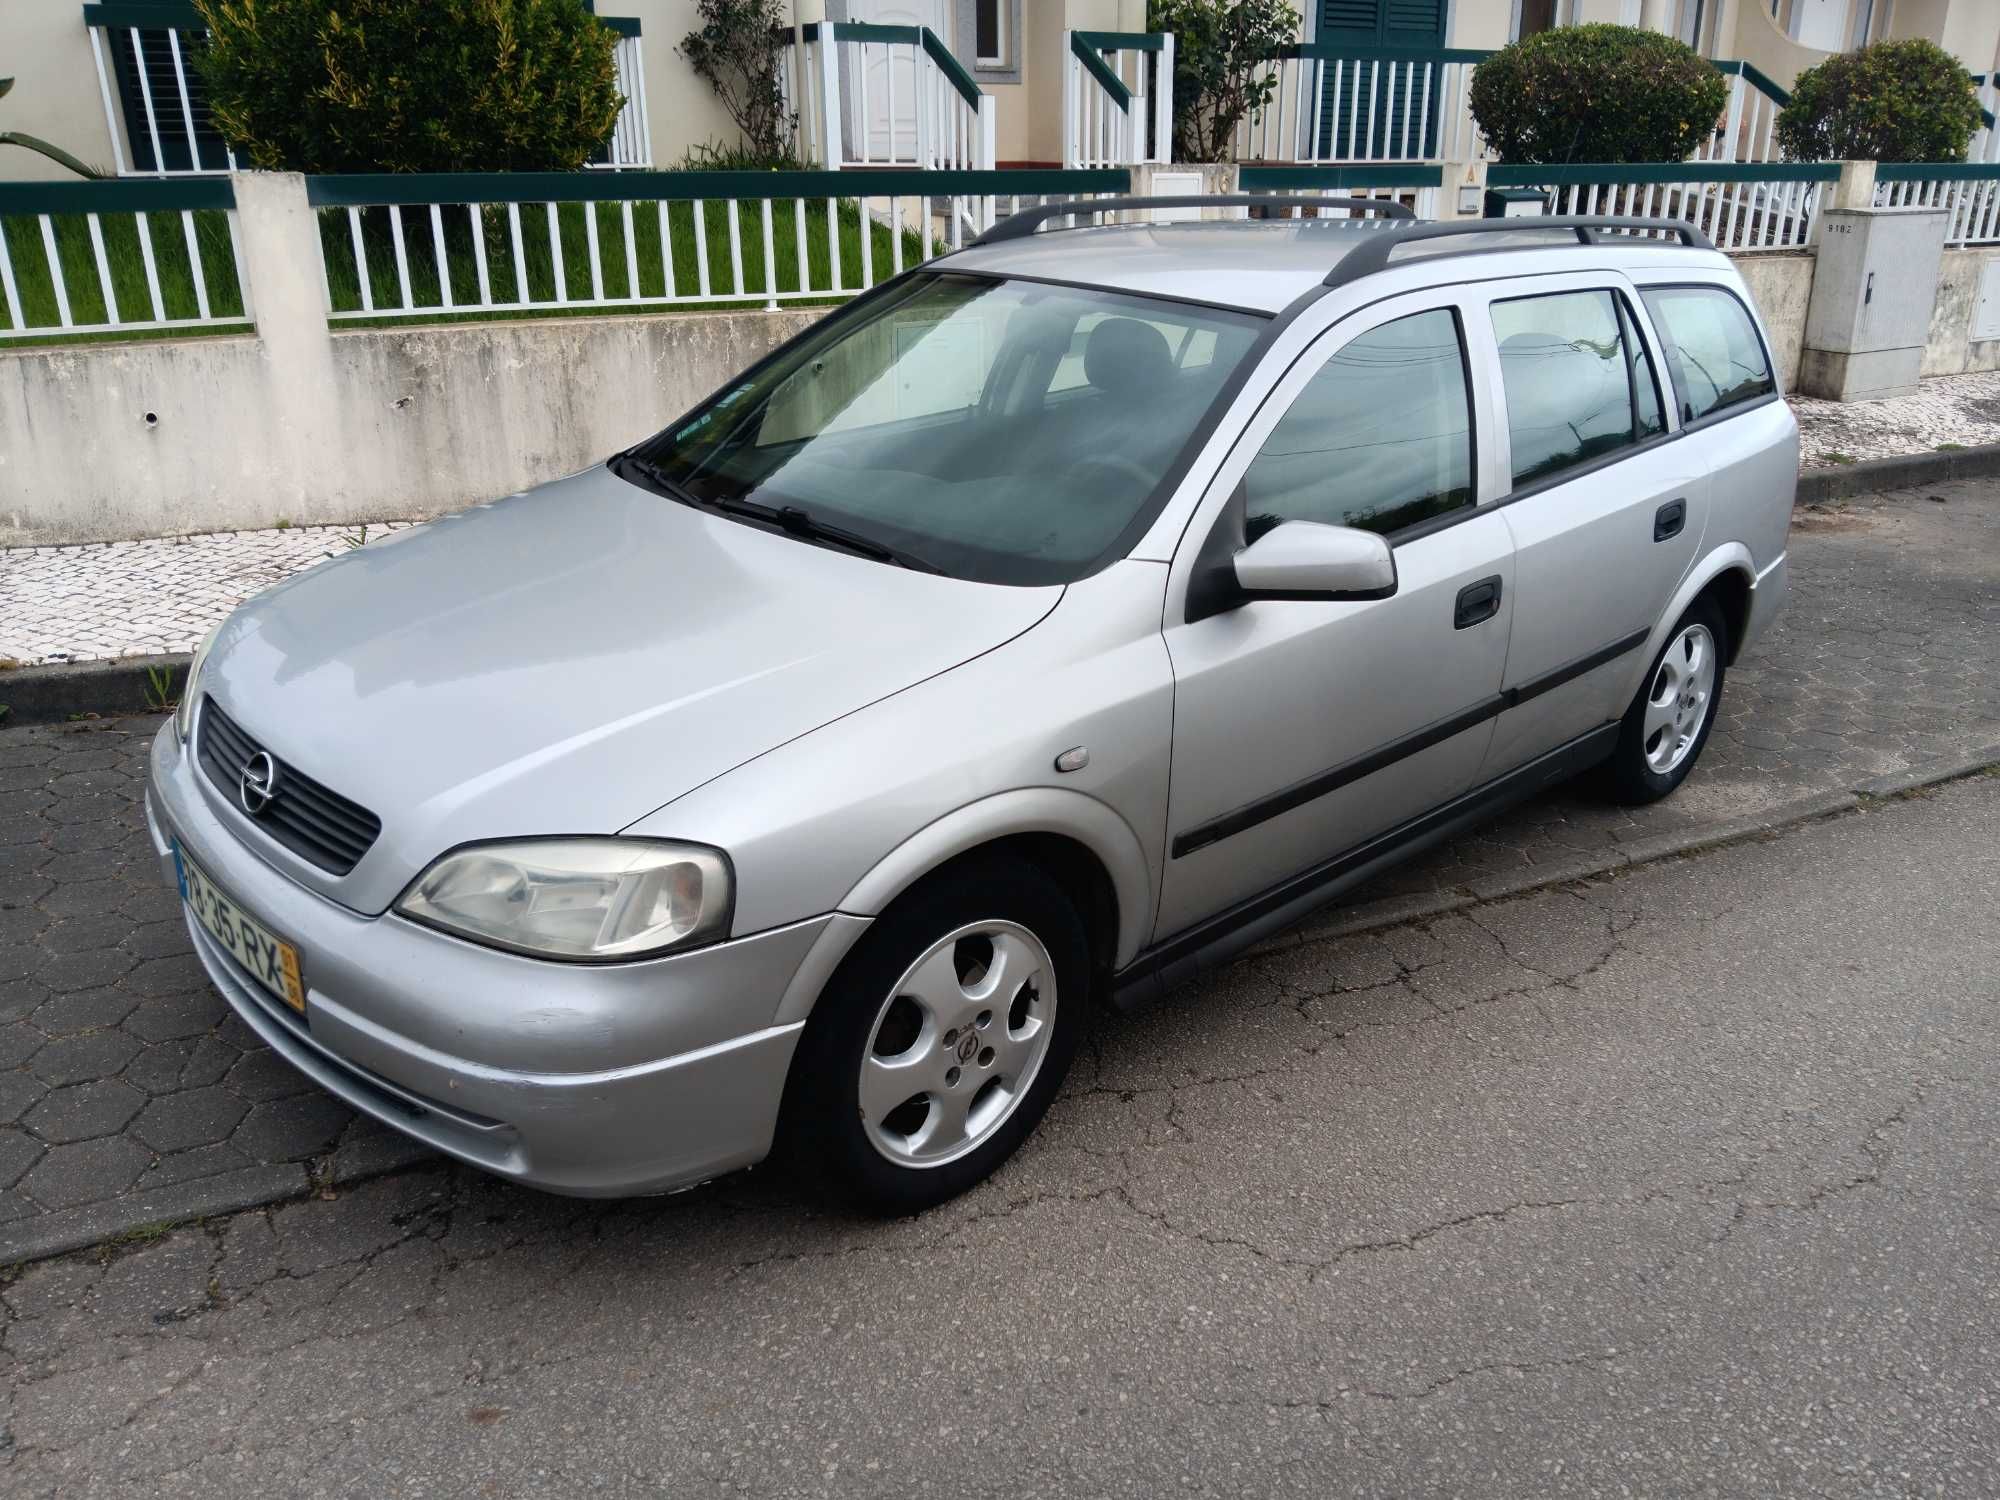 Opel astra G 1.4 ano 2001